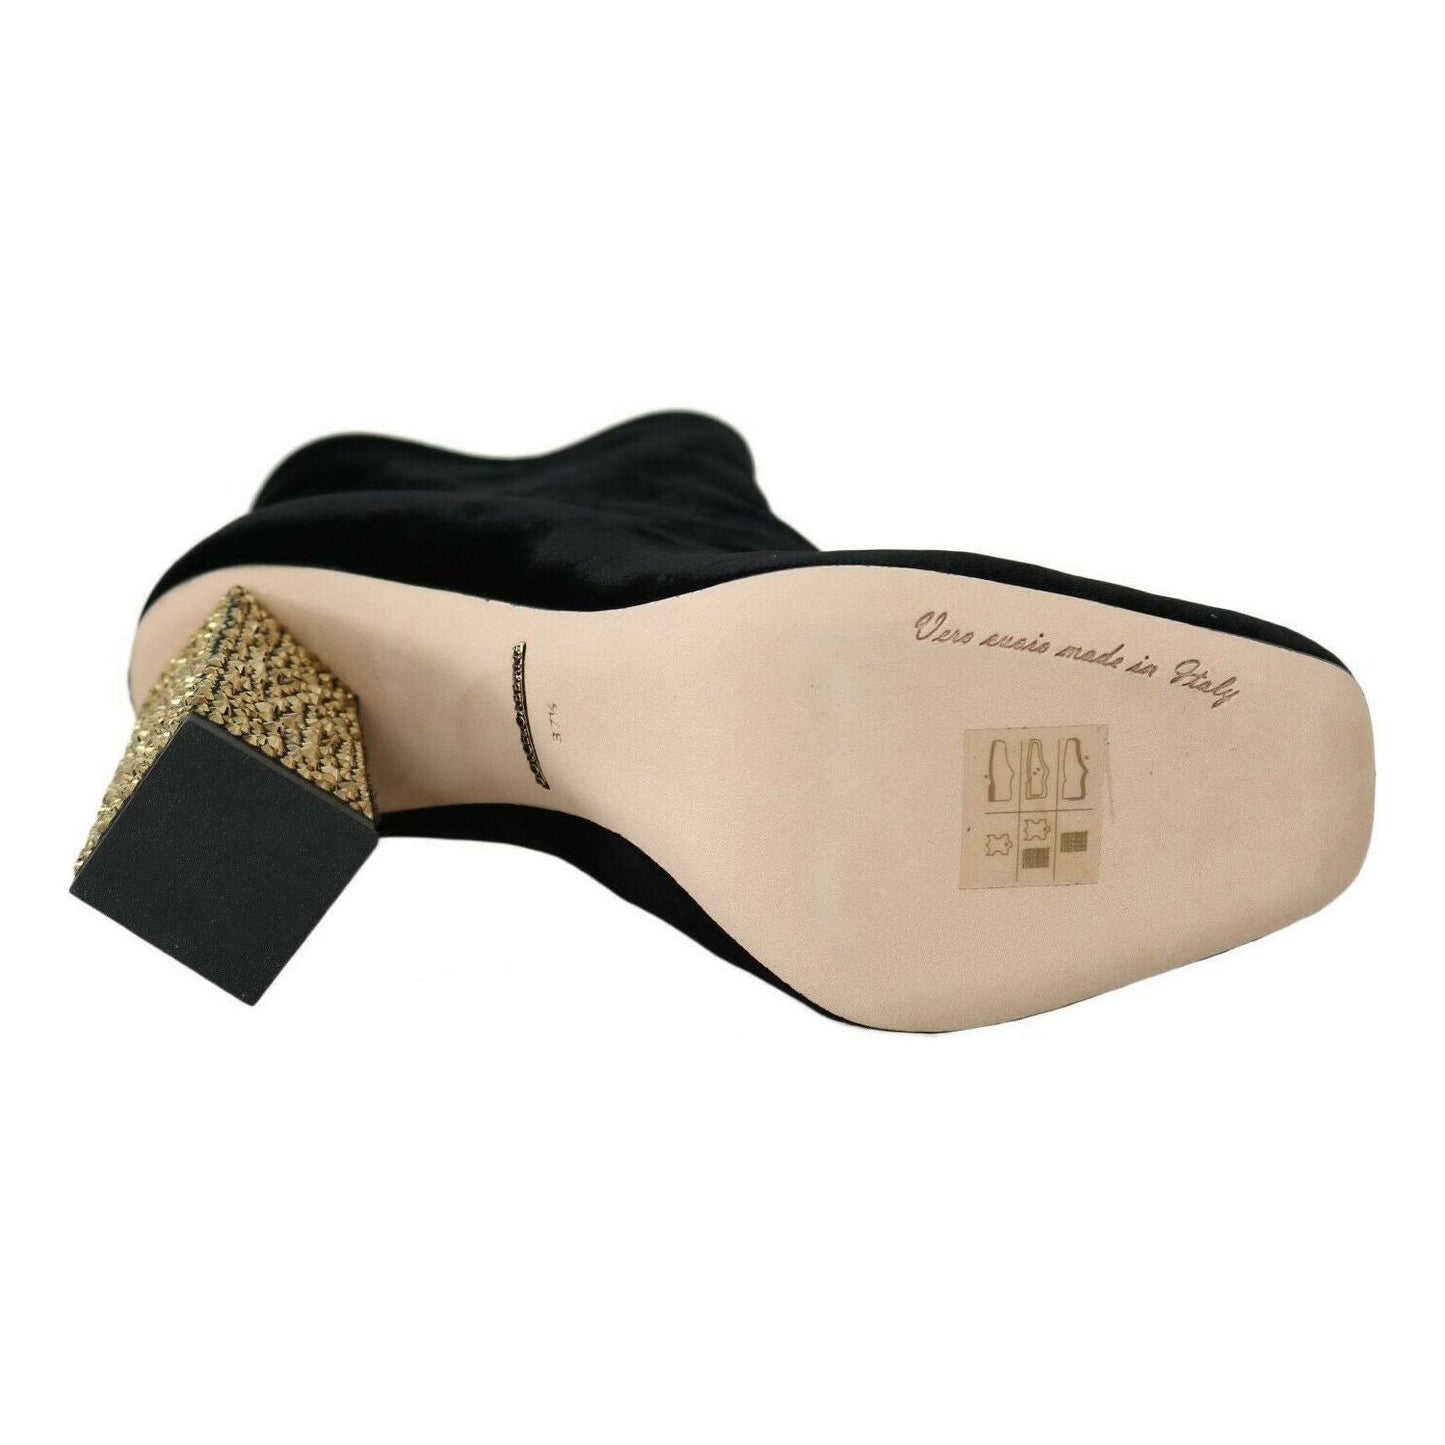 Dolce & Gabbana Elegant Velvet Ankle Boots with Crystal Heels black-velvet-crystal-square-heels-shoes